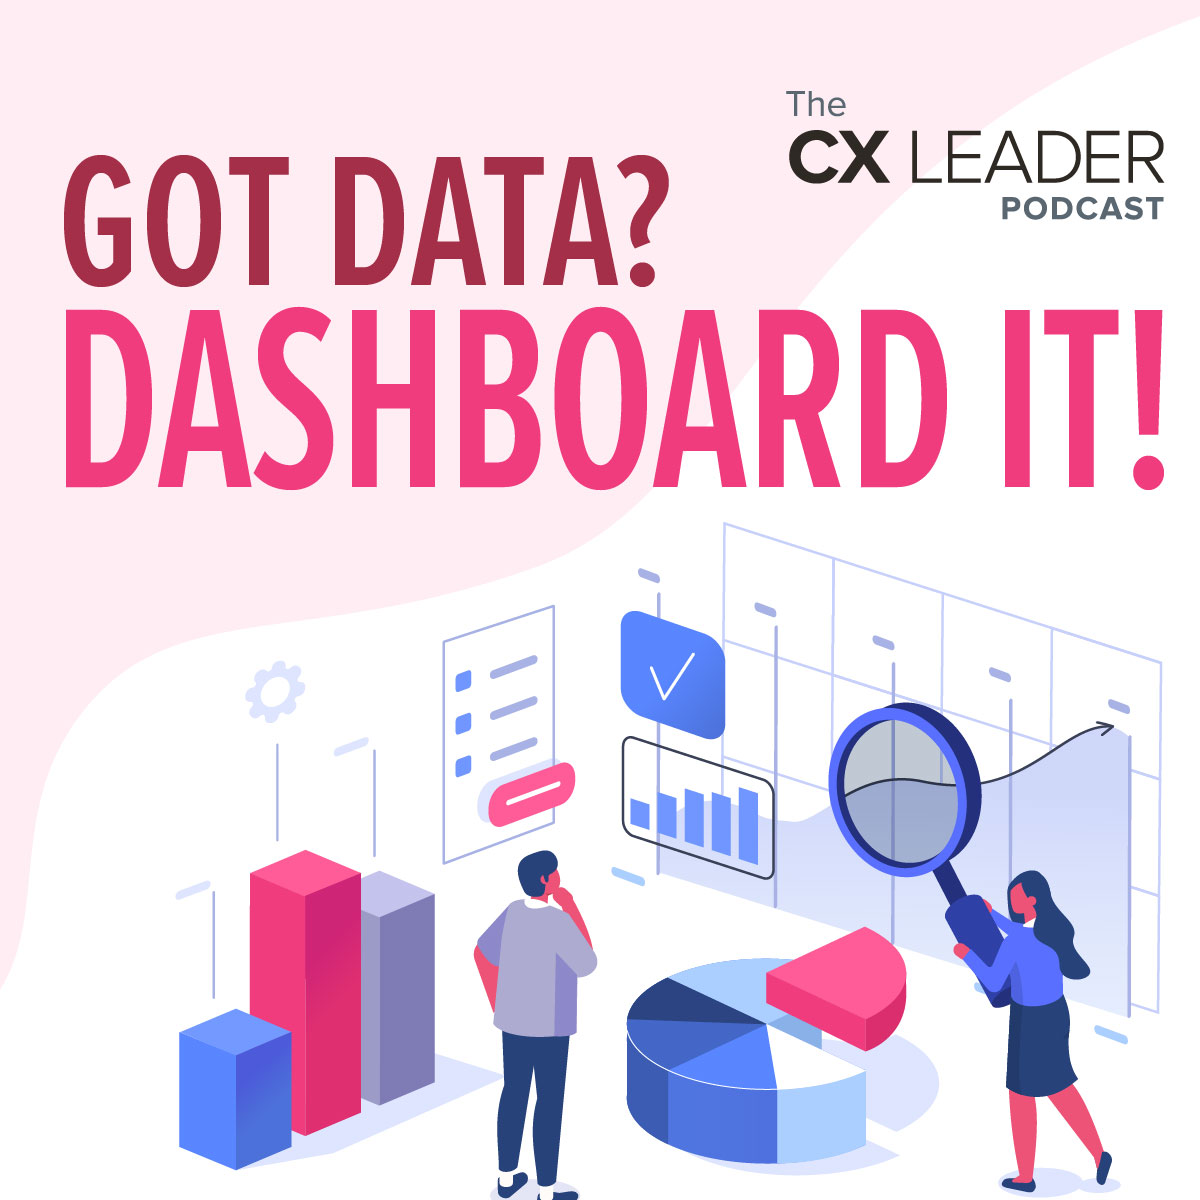 Got data? Dashboard it!